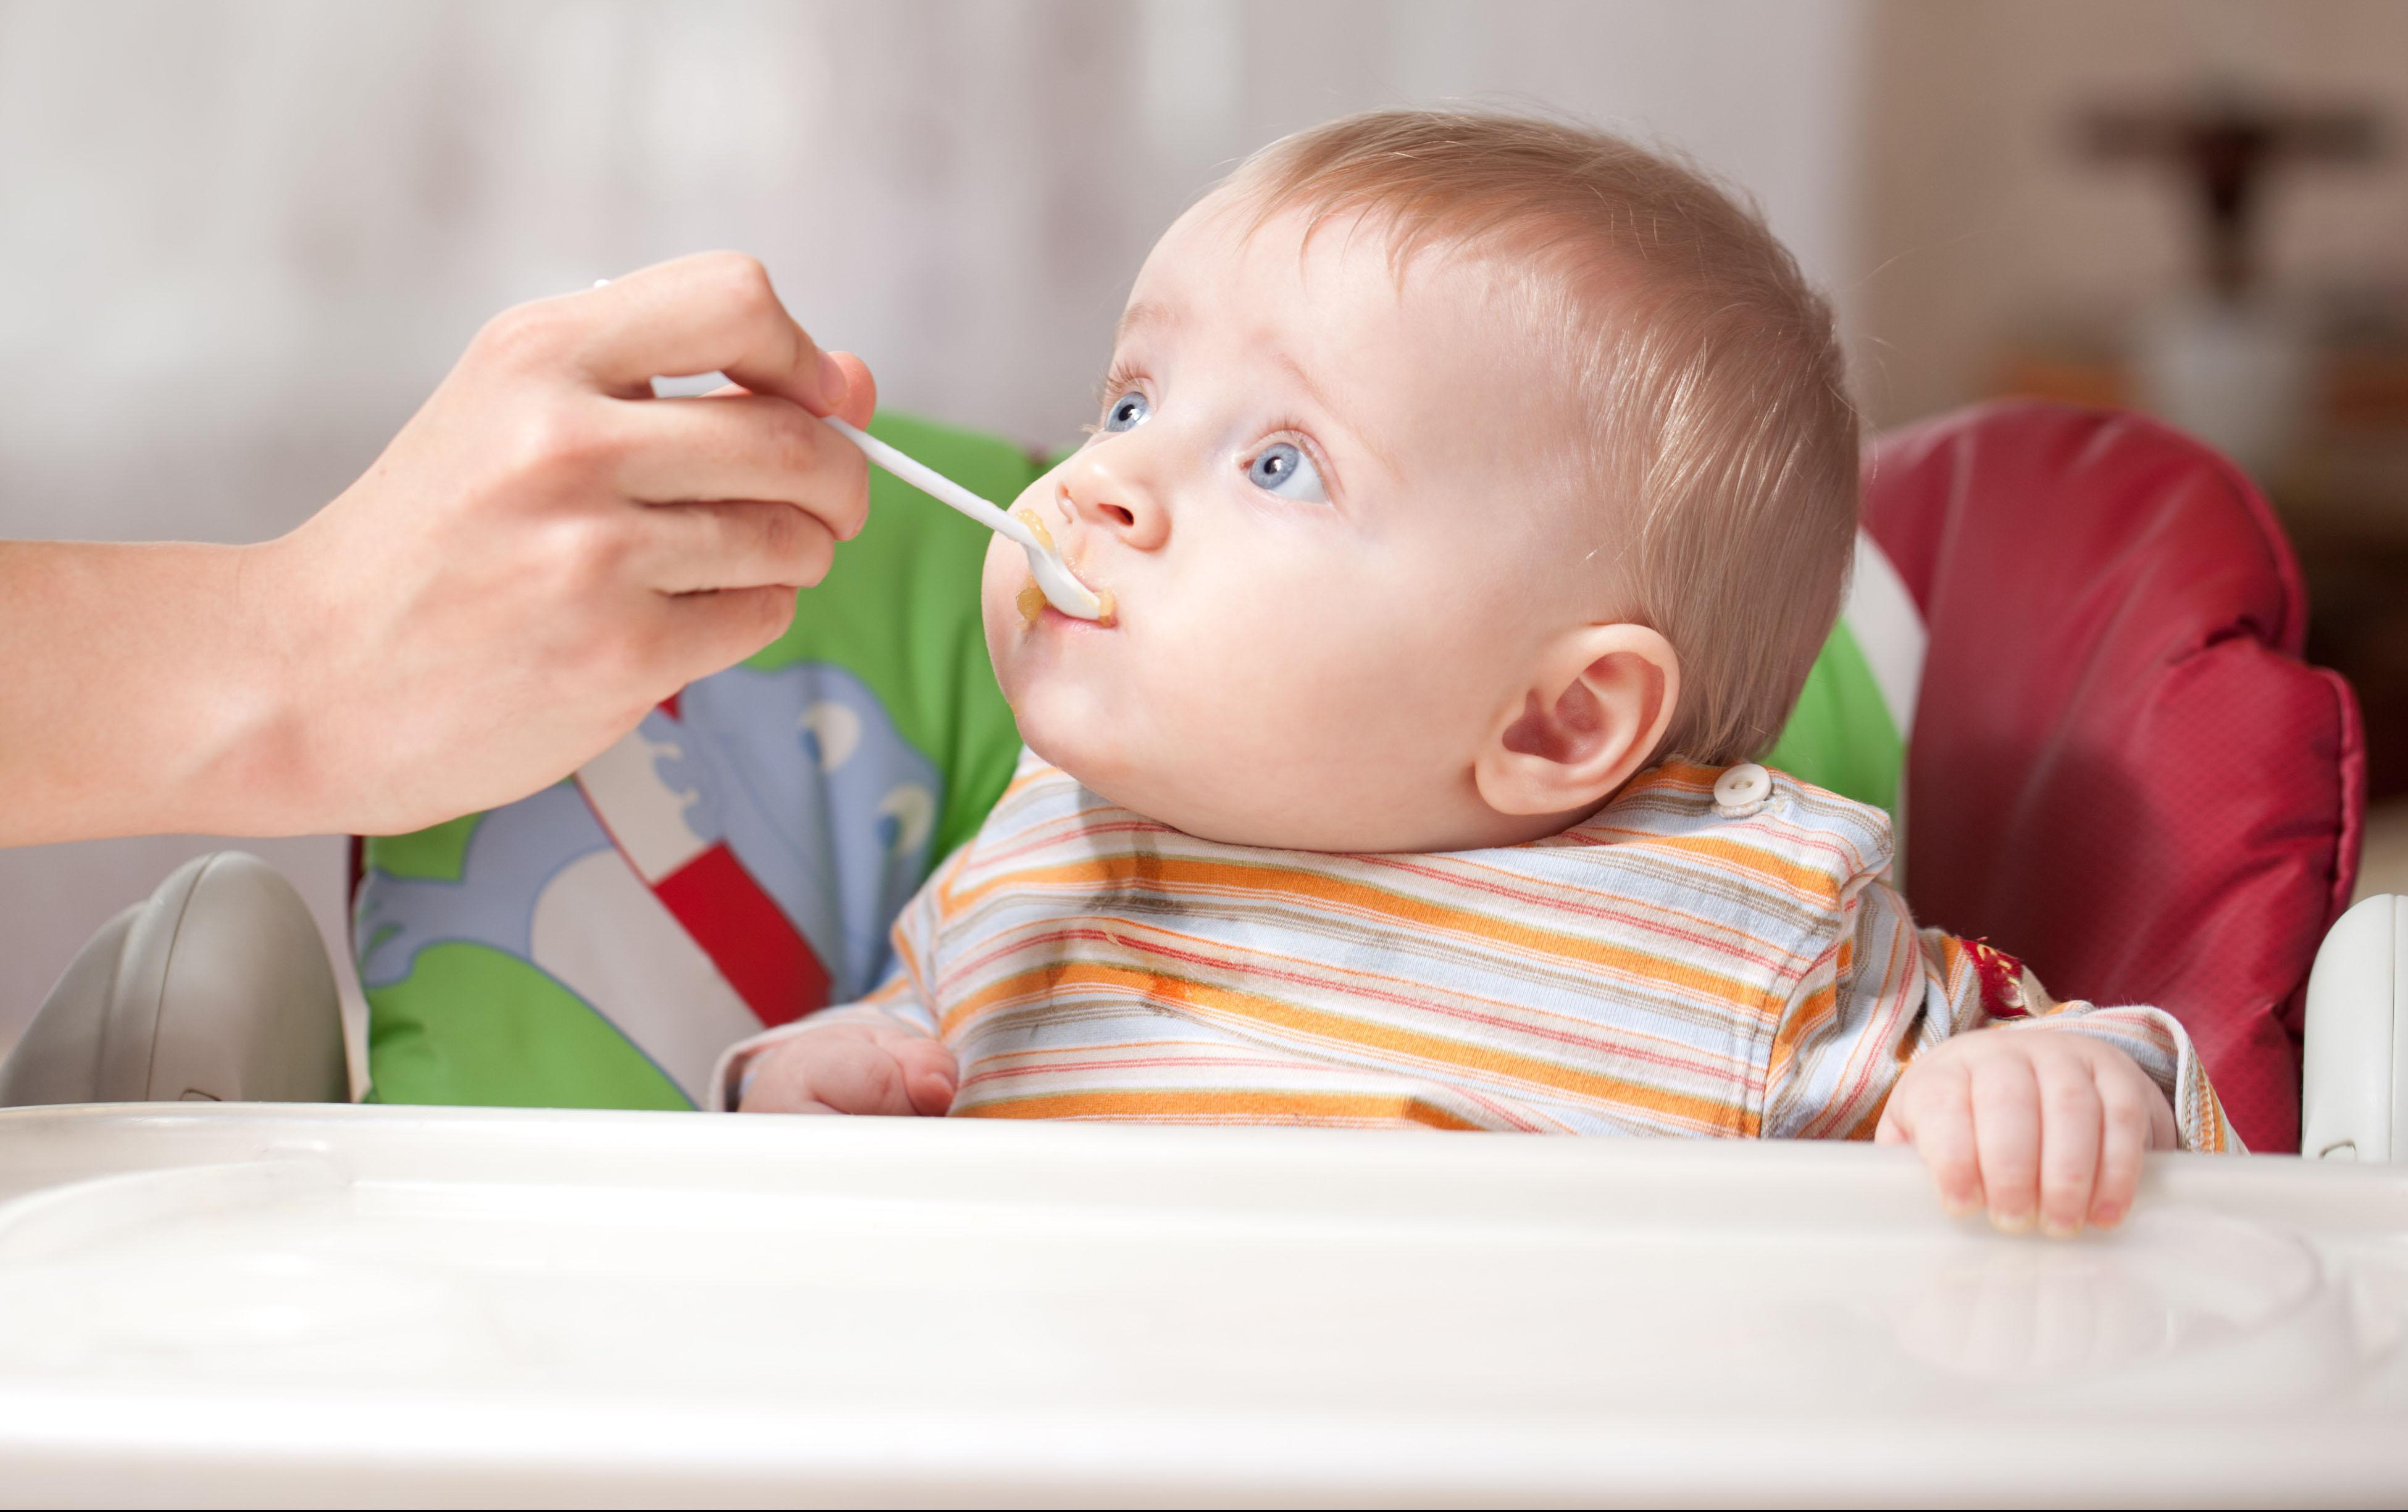 PEDIJATRI UPOZORAVAJU: Zdrava deca ne smeju da izbegavaju gluten